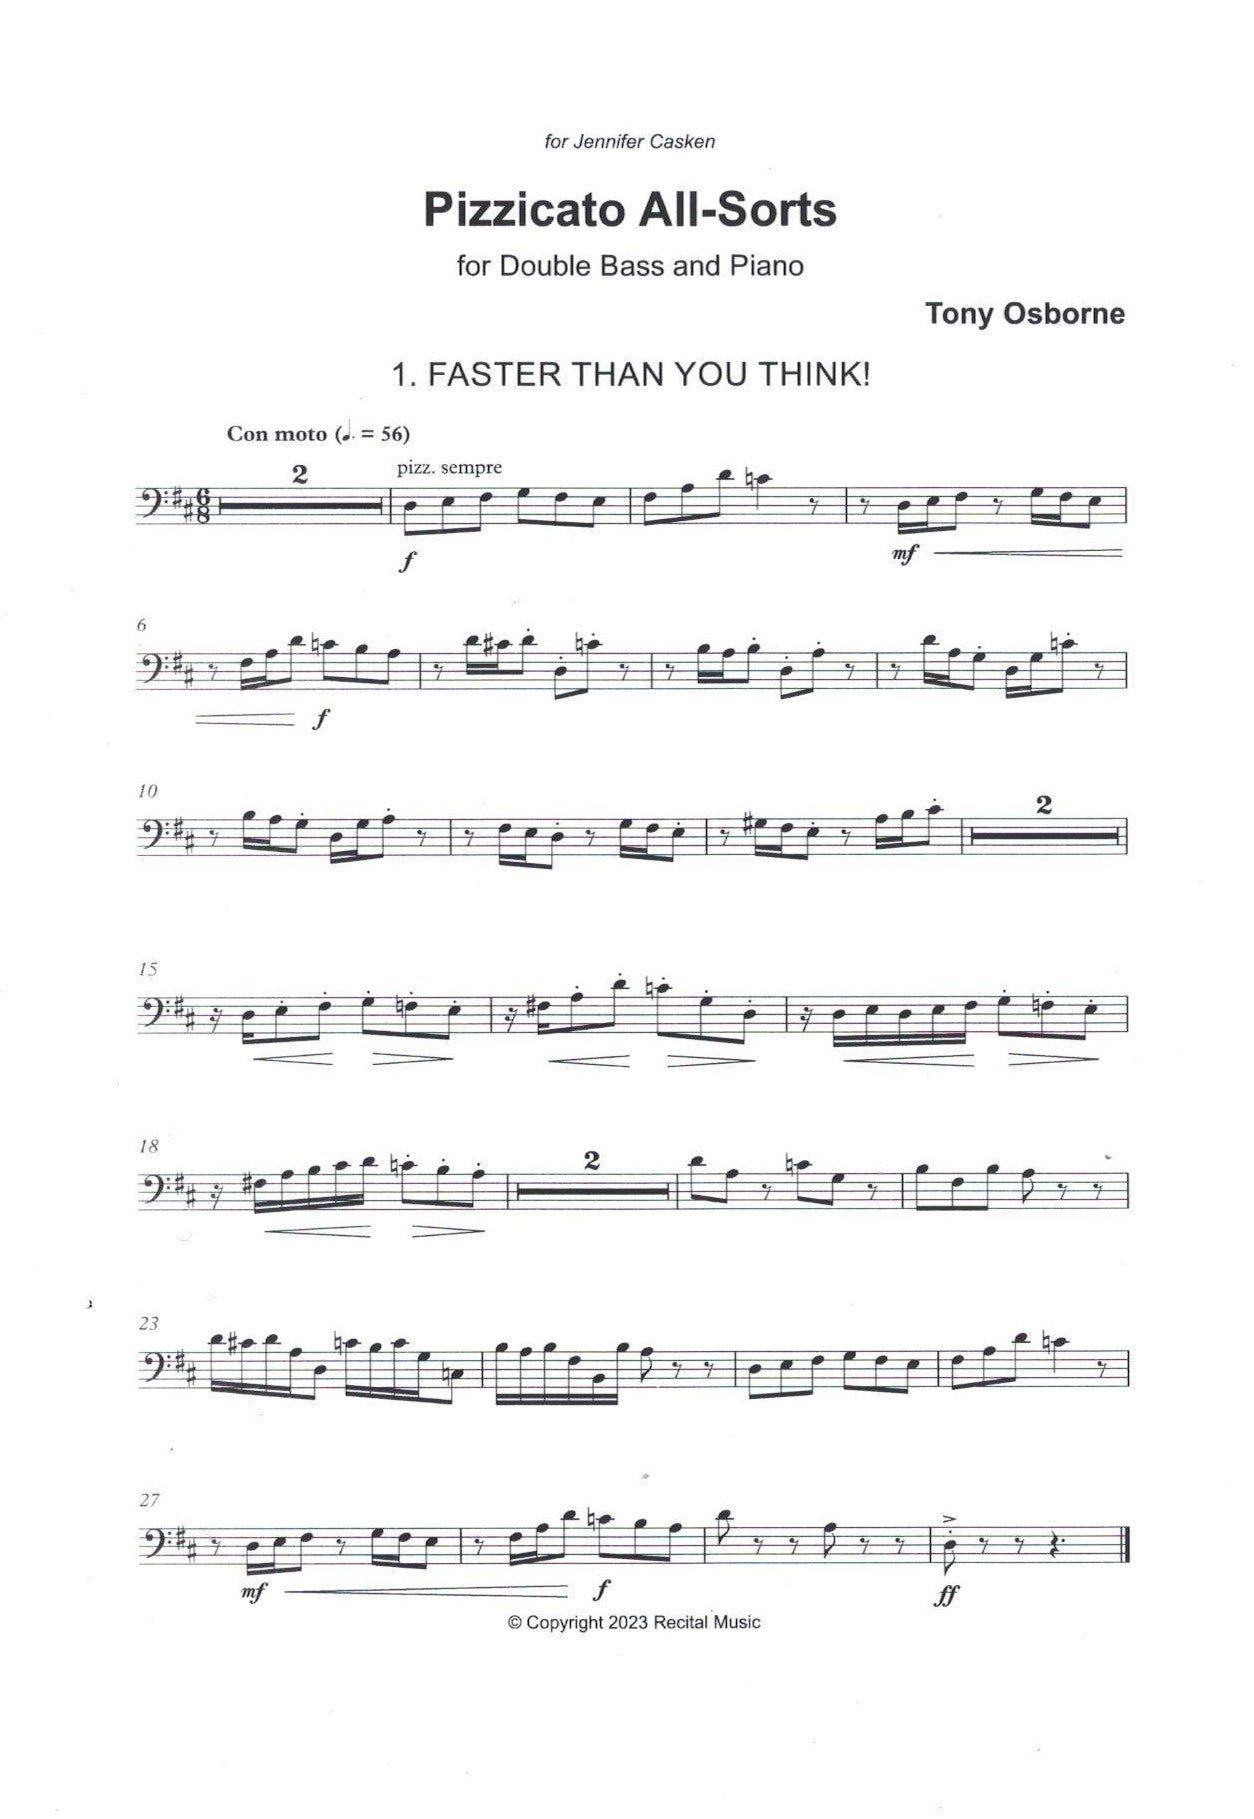 Tony Osborne: Pizzicato All-Sorts for double bass & piano